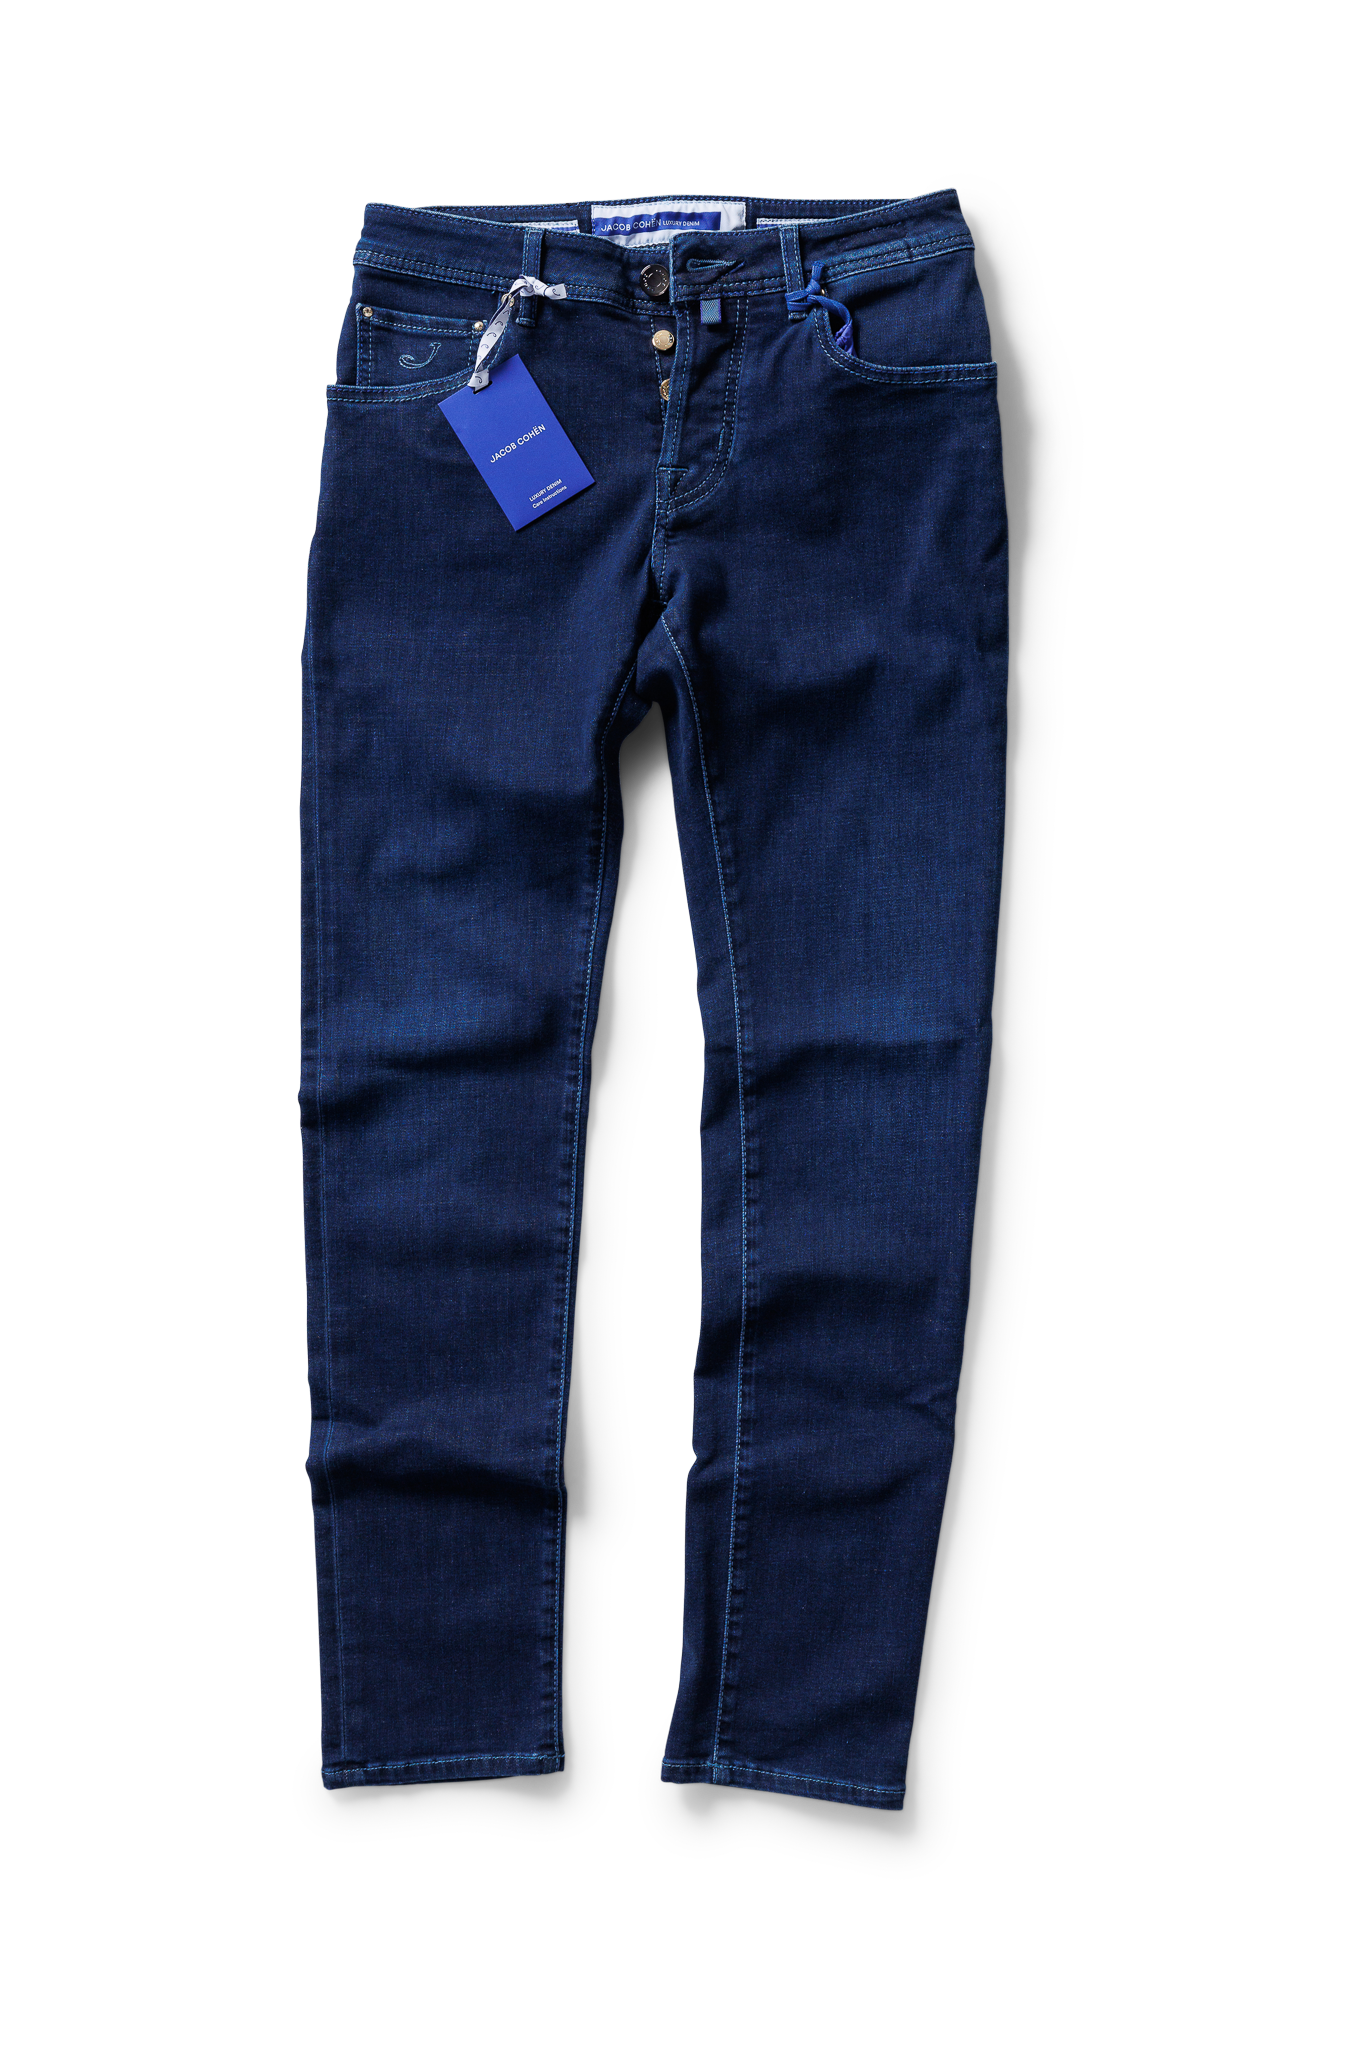 Jacob Cohen 5 Pocket Jeans - Jeans